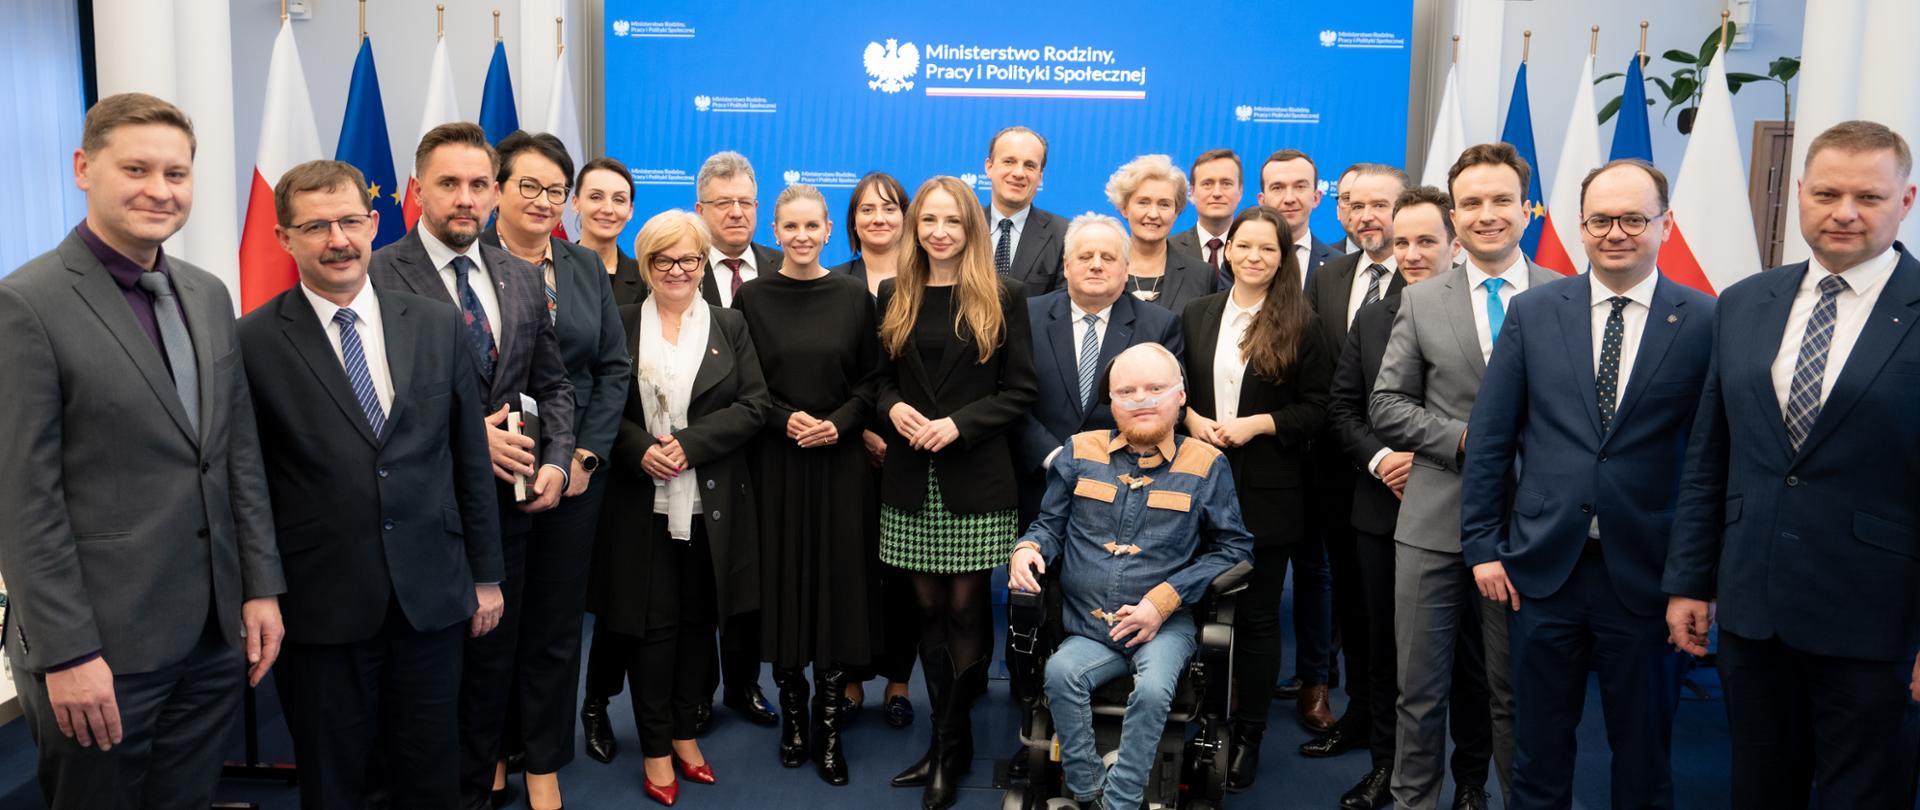 Na zdjęciu znajdują się wszyscy uczestnicy narady w w Ministerstwie Rodziny, Pracy i Polityki Społecznej w Warszawie. 